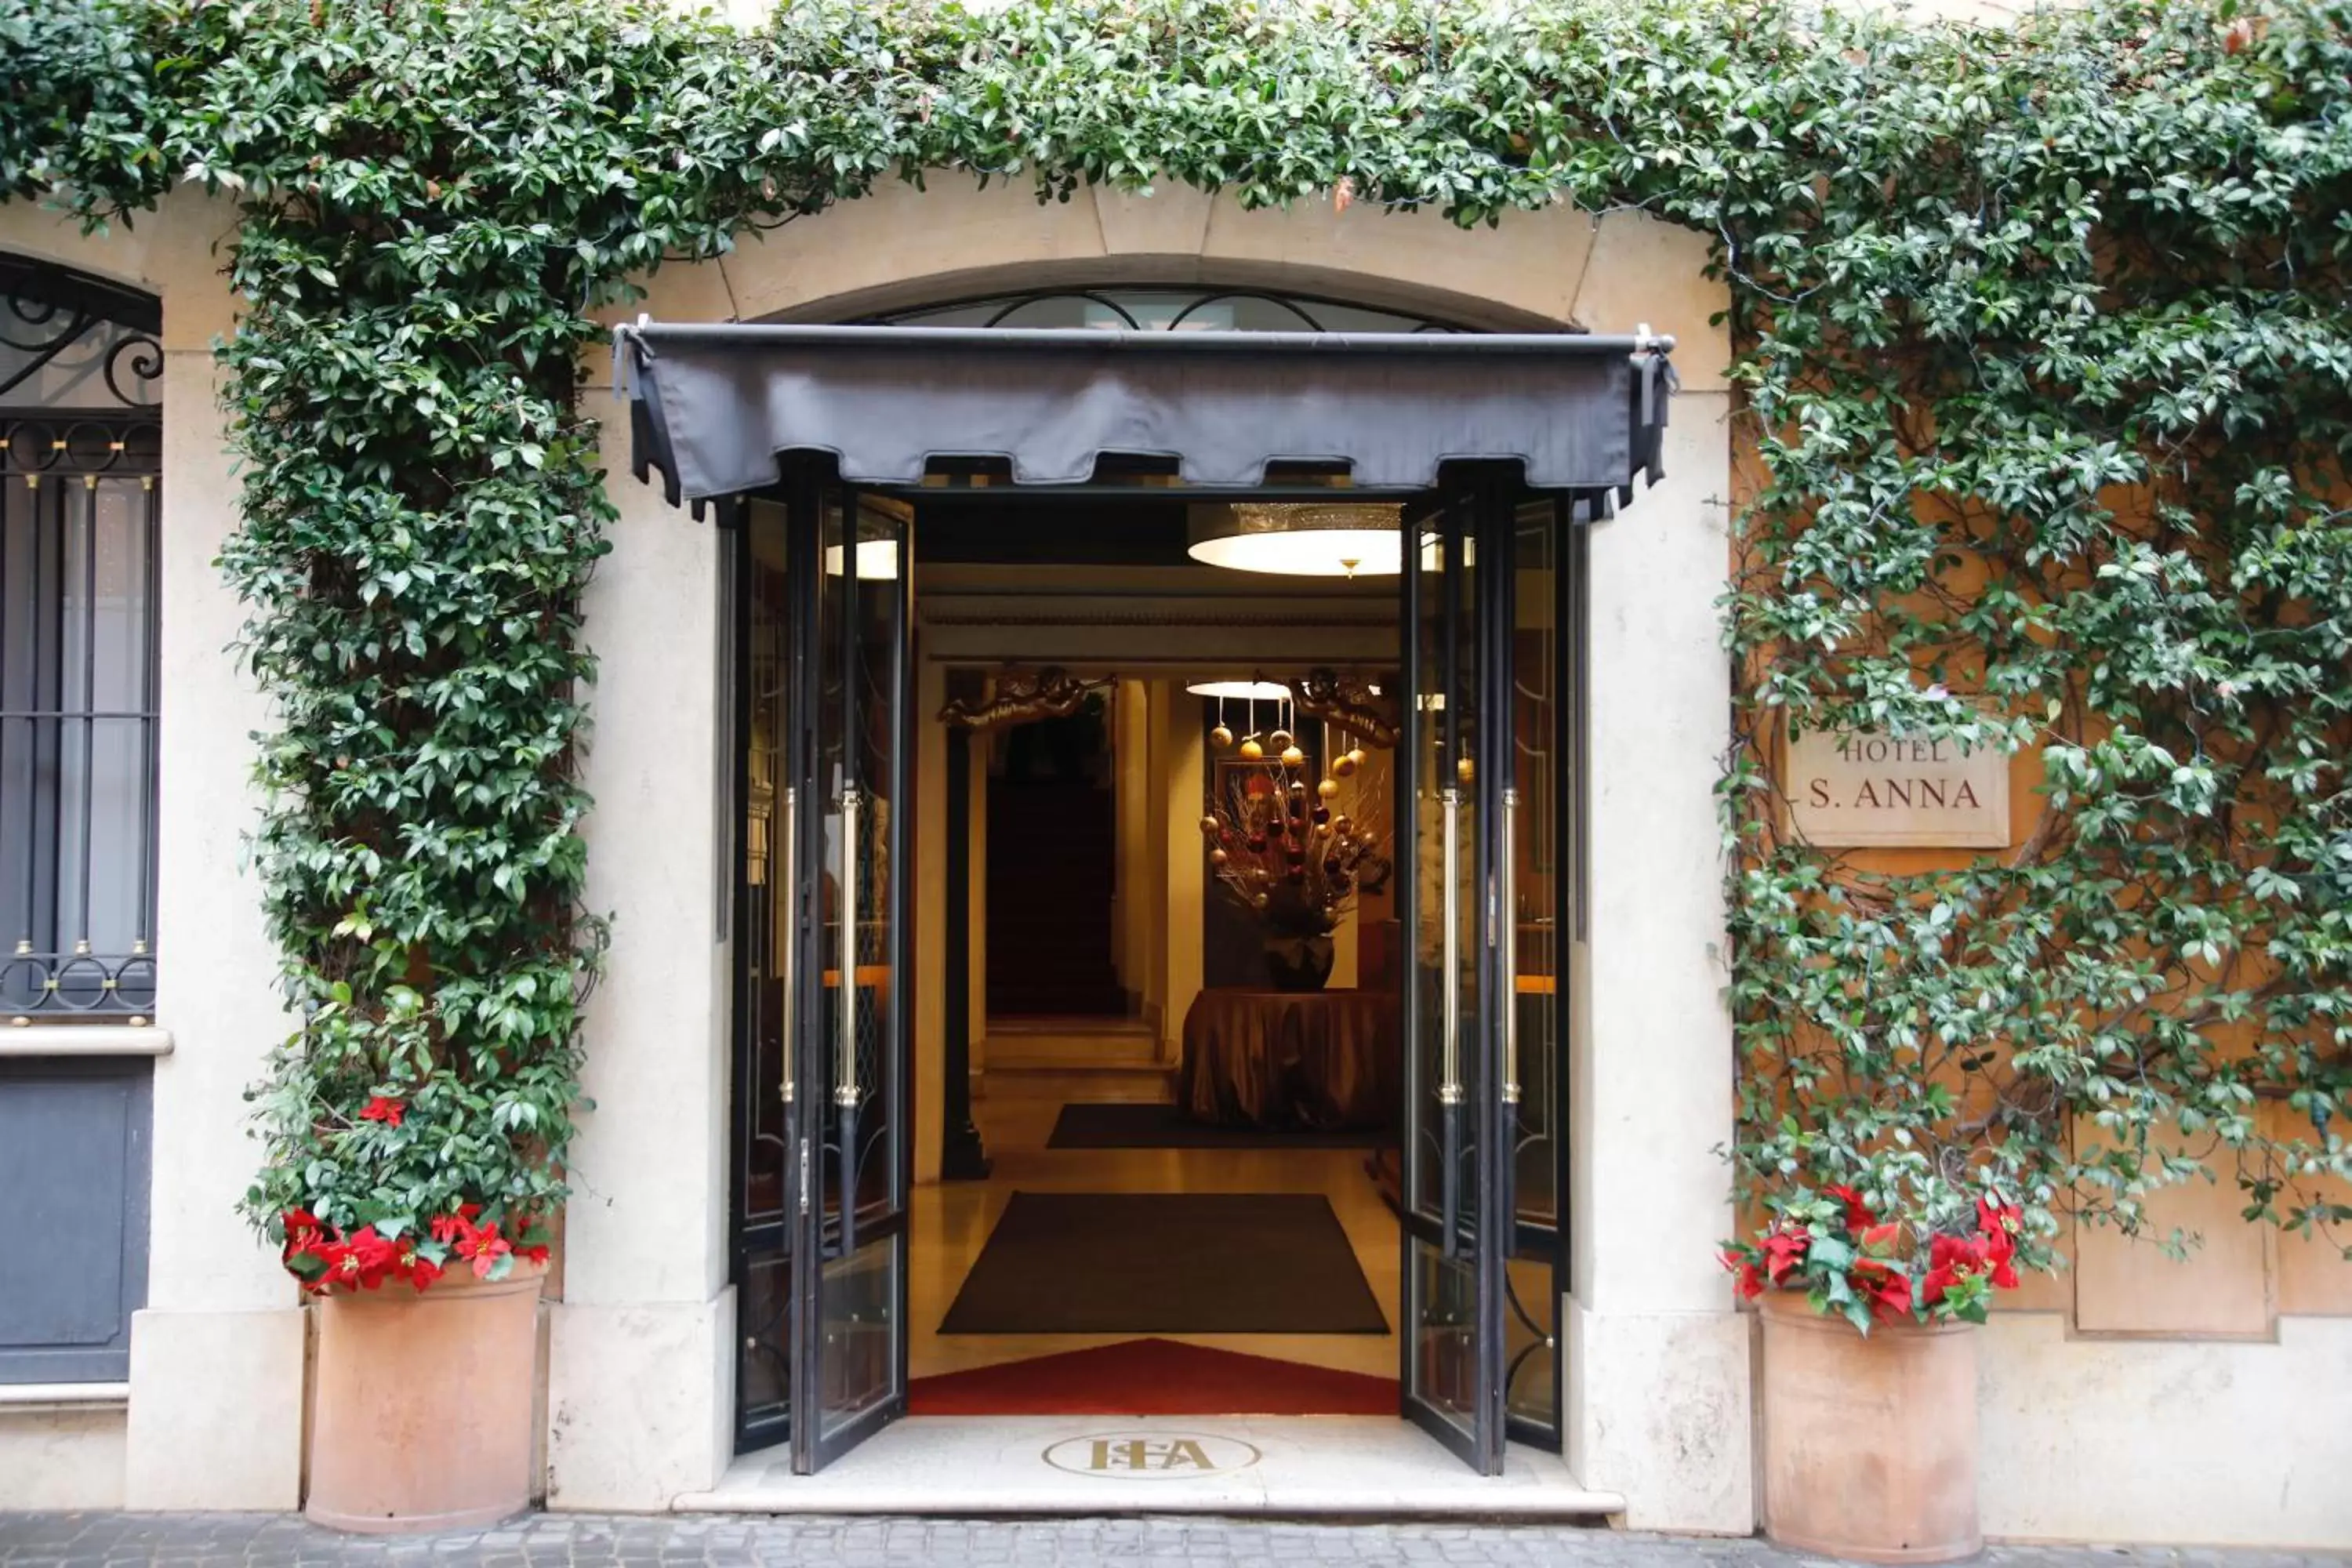 Facade/entrance in Hotel S. Anna